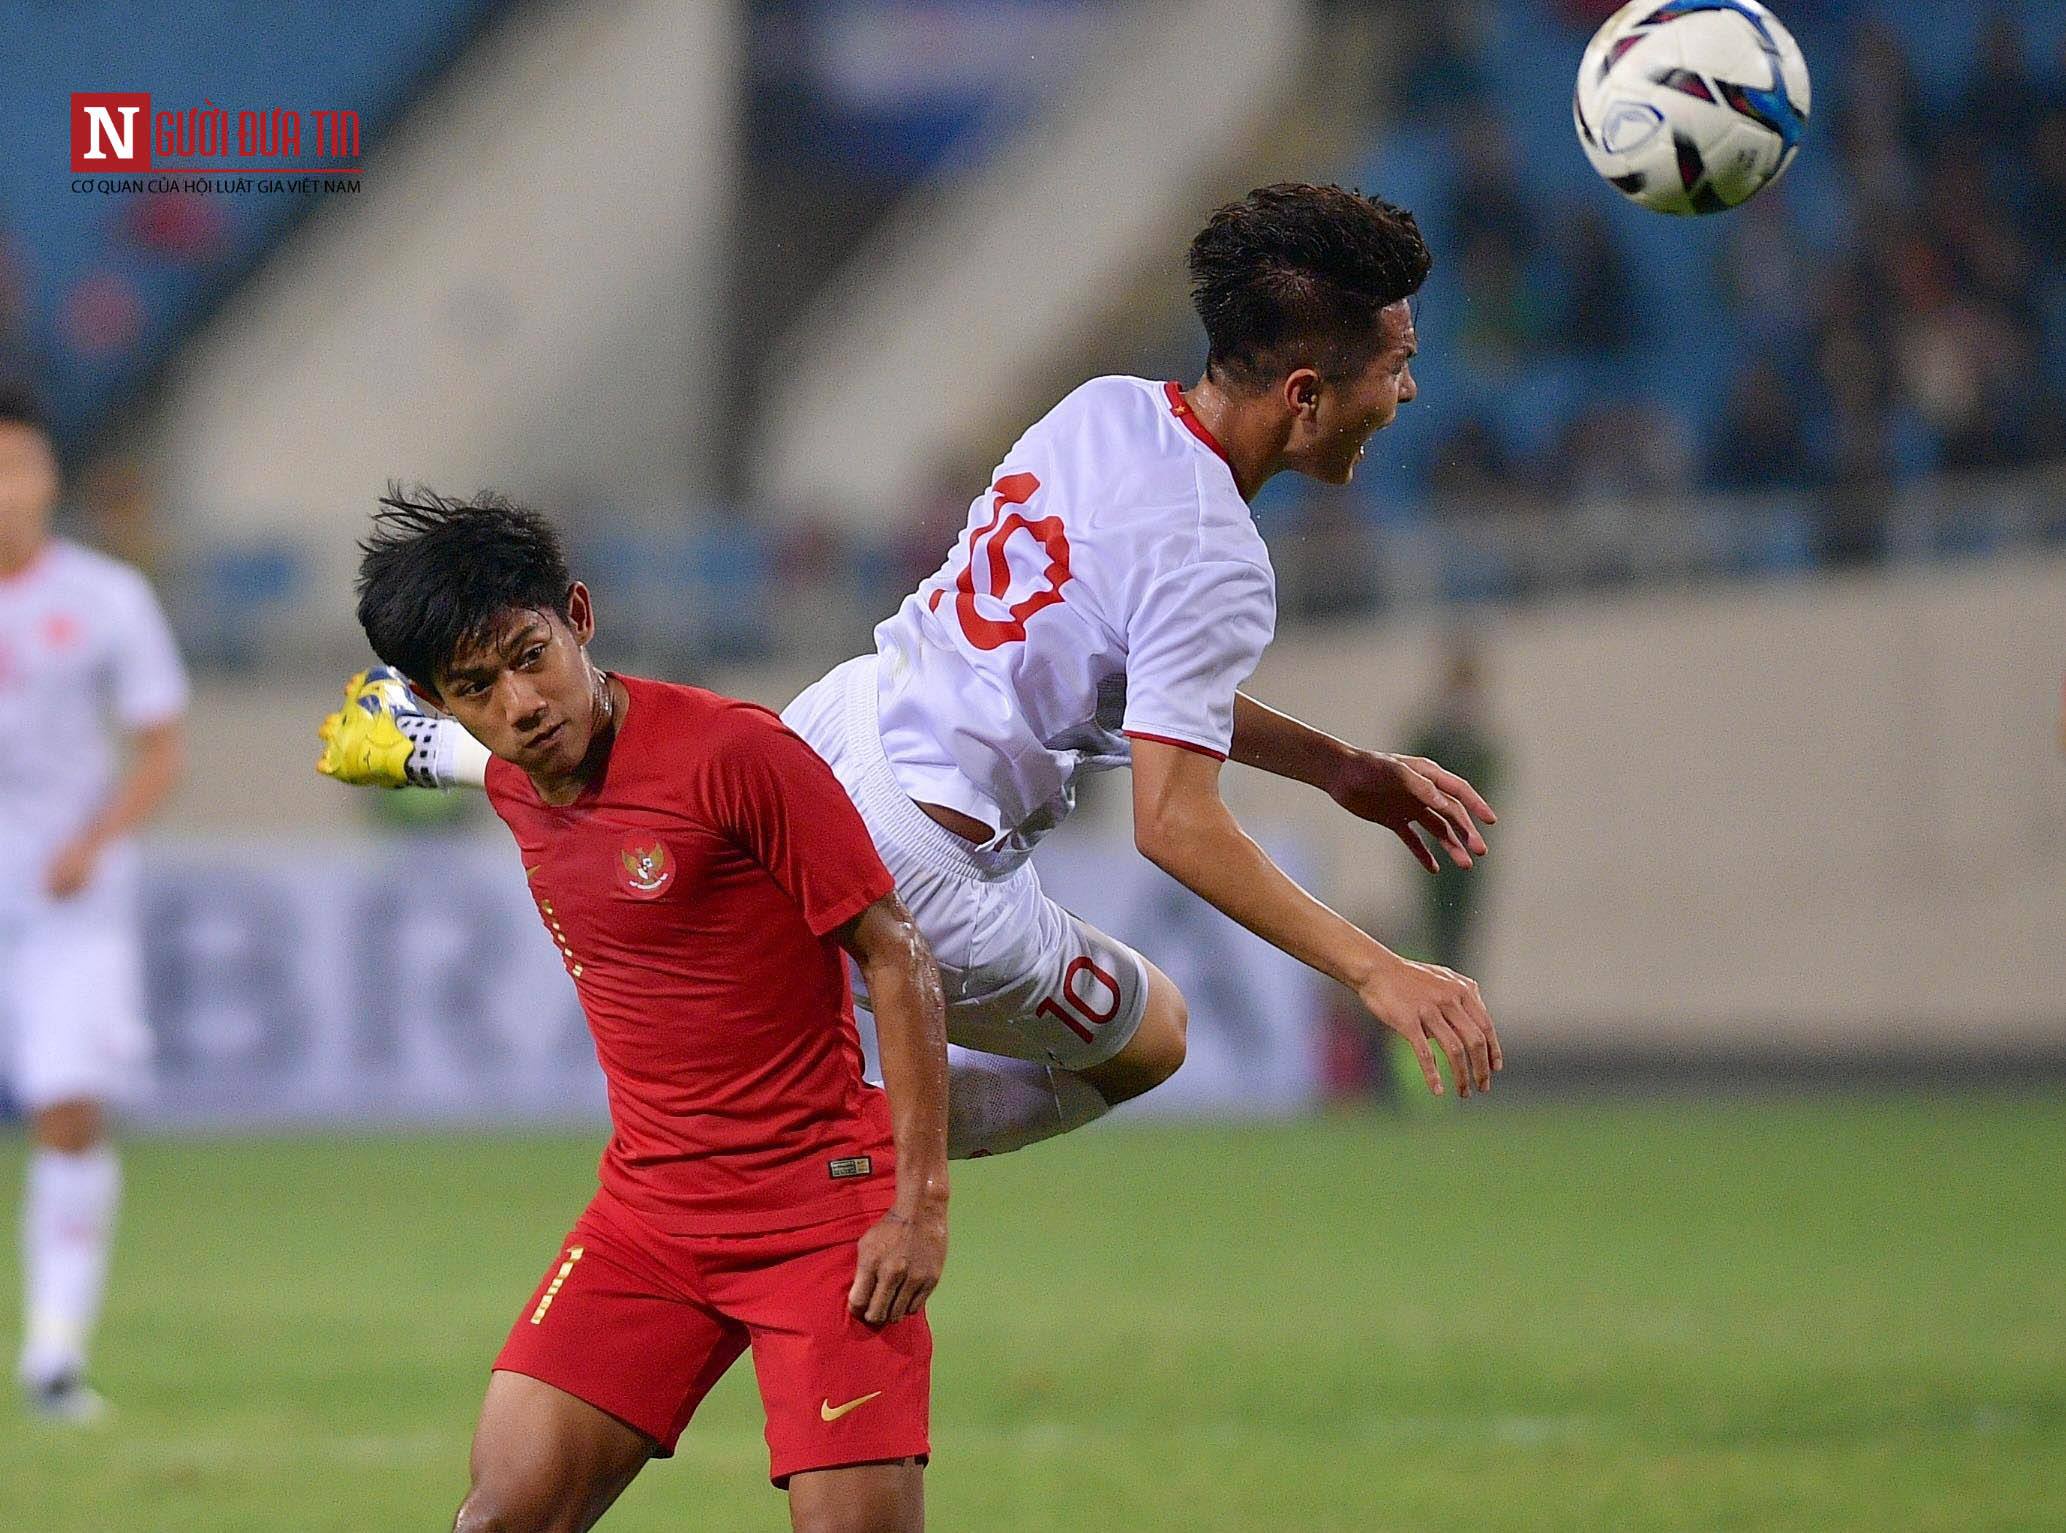 Thể thao - Chùm ảnh những pha vào bóng nguy hiểm của U23 Indonesia trong trận gặp U23 Việt Nam (Hình 2).